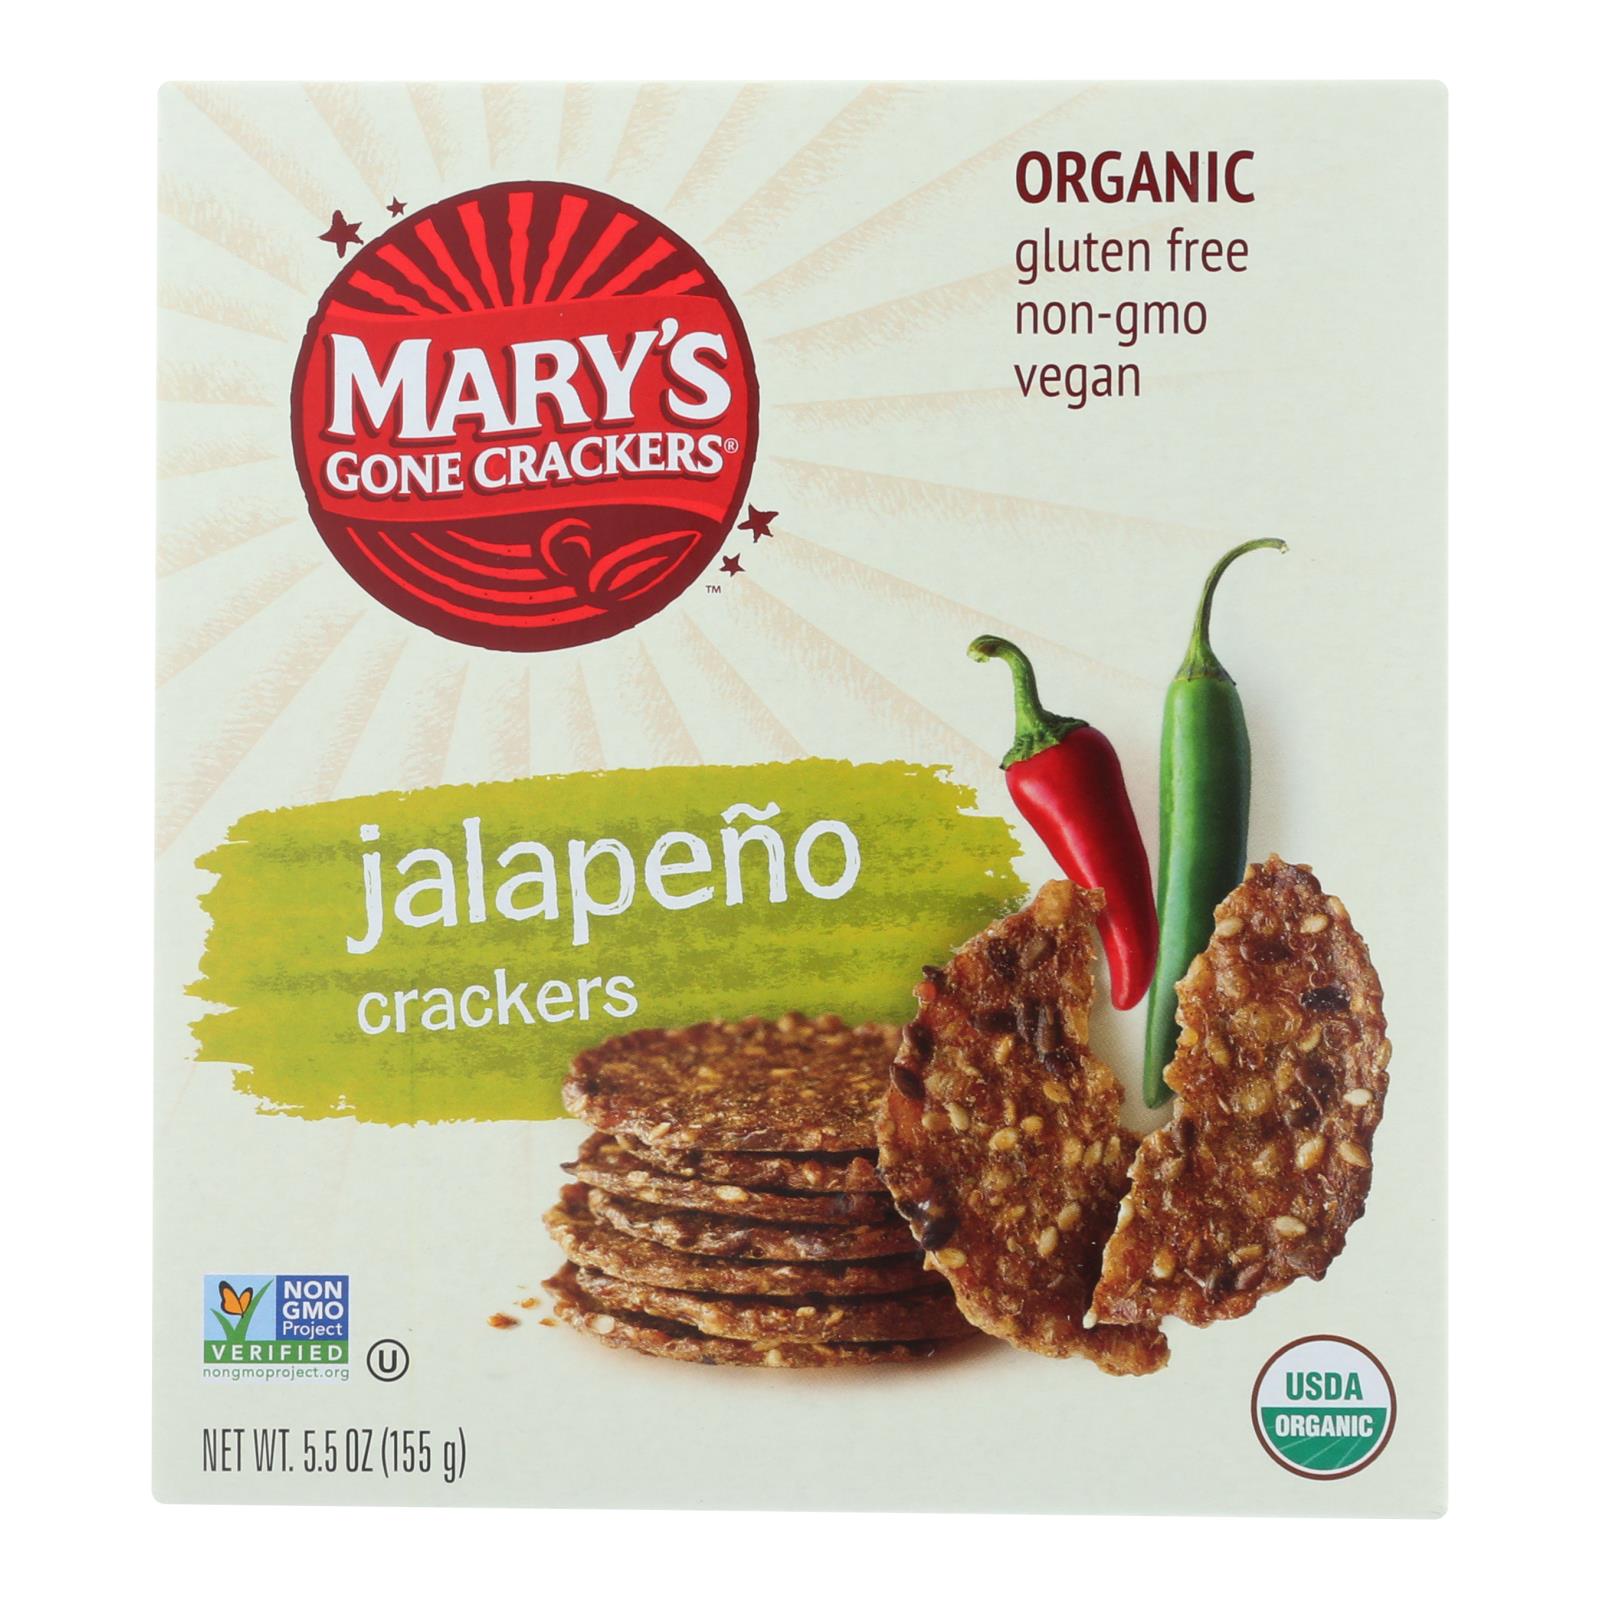 Craquelins de Mary's Gone, Mary's Gone Crackers Hot 'N Spicy Jalapeno Crackers - Caisse de 6 - 5.5 OZ (paquet de 6)